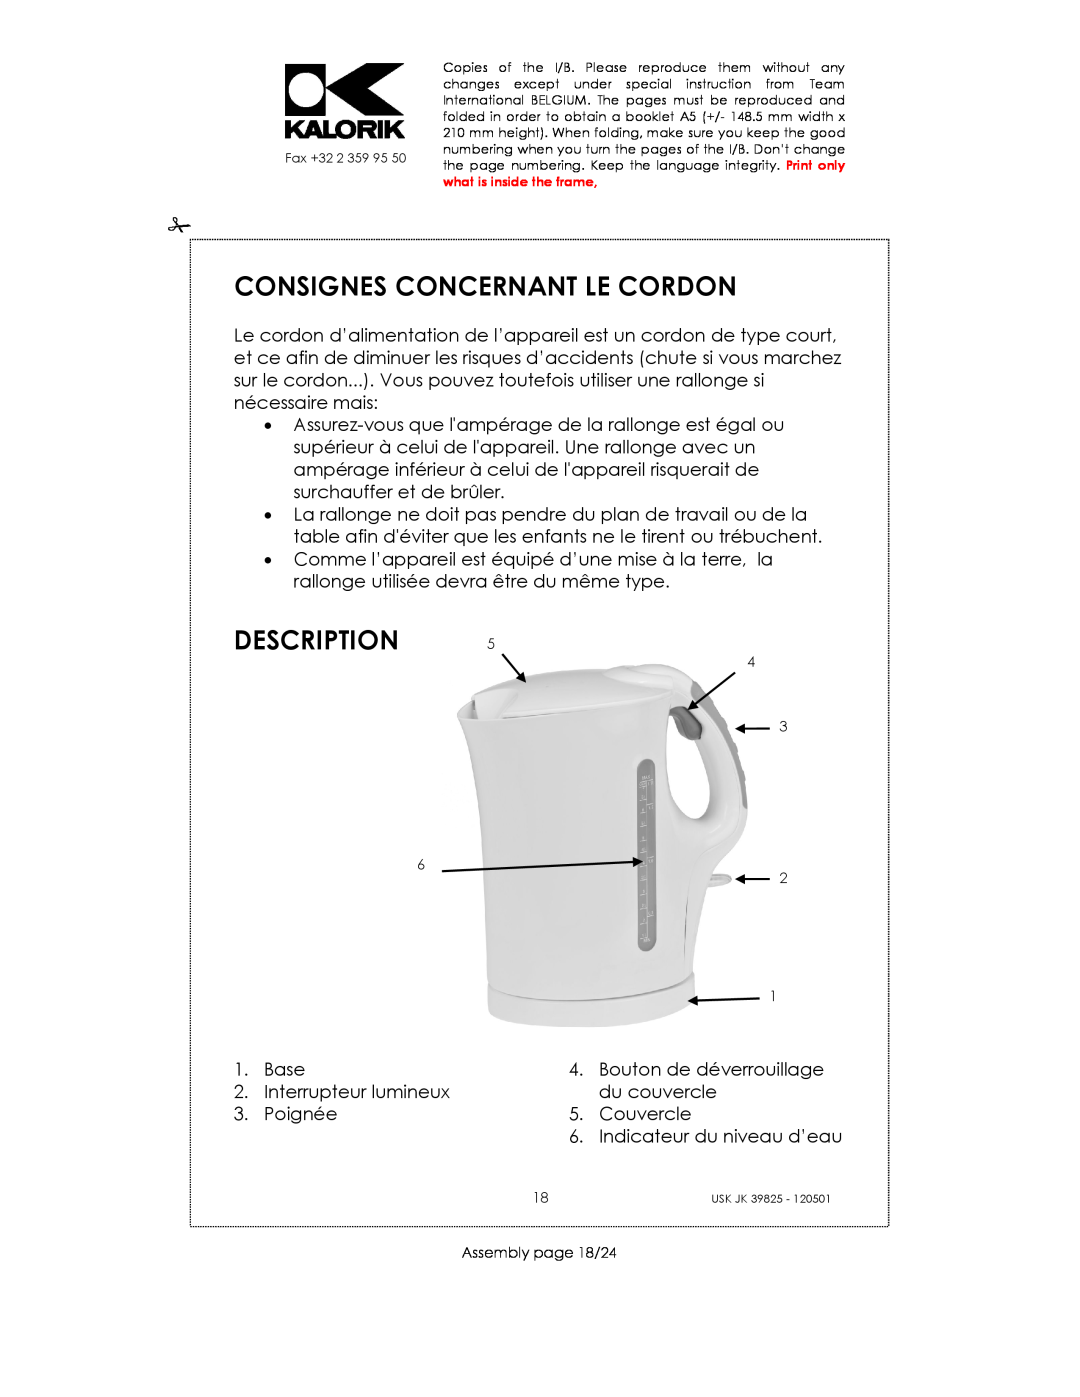 Kalorik JK 39825 manual Consignes Concernant Le Cordon, Description 